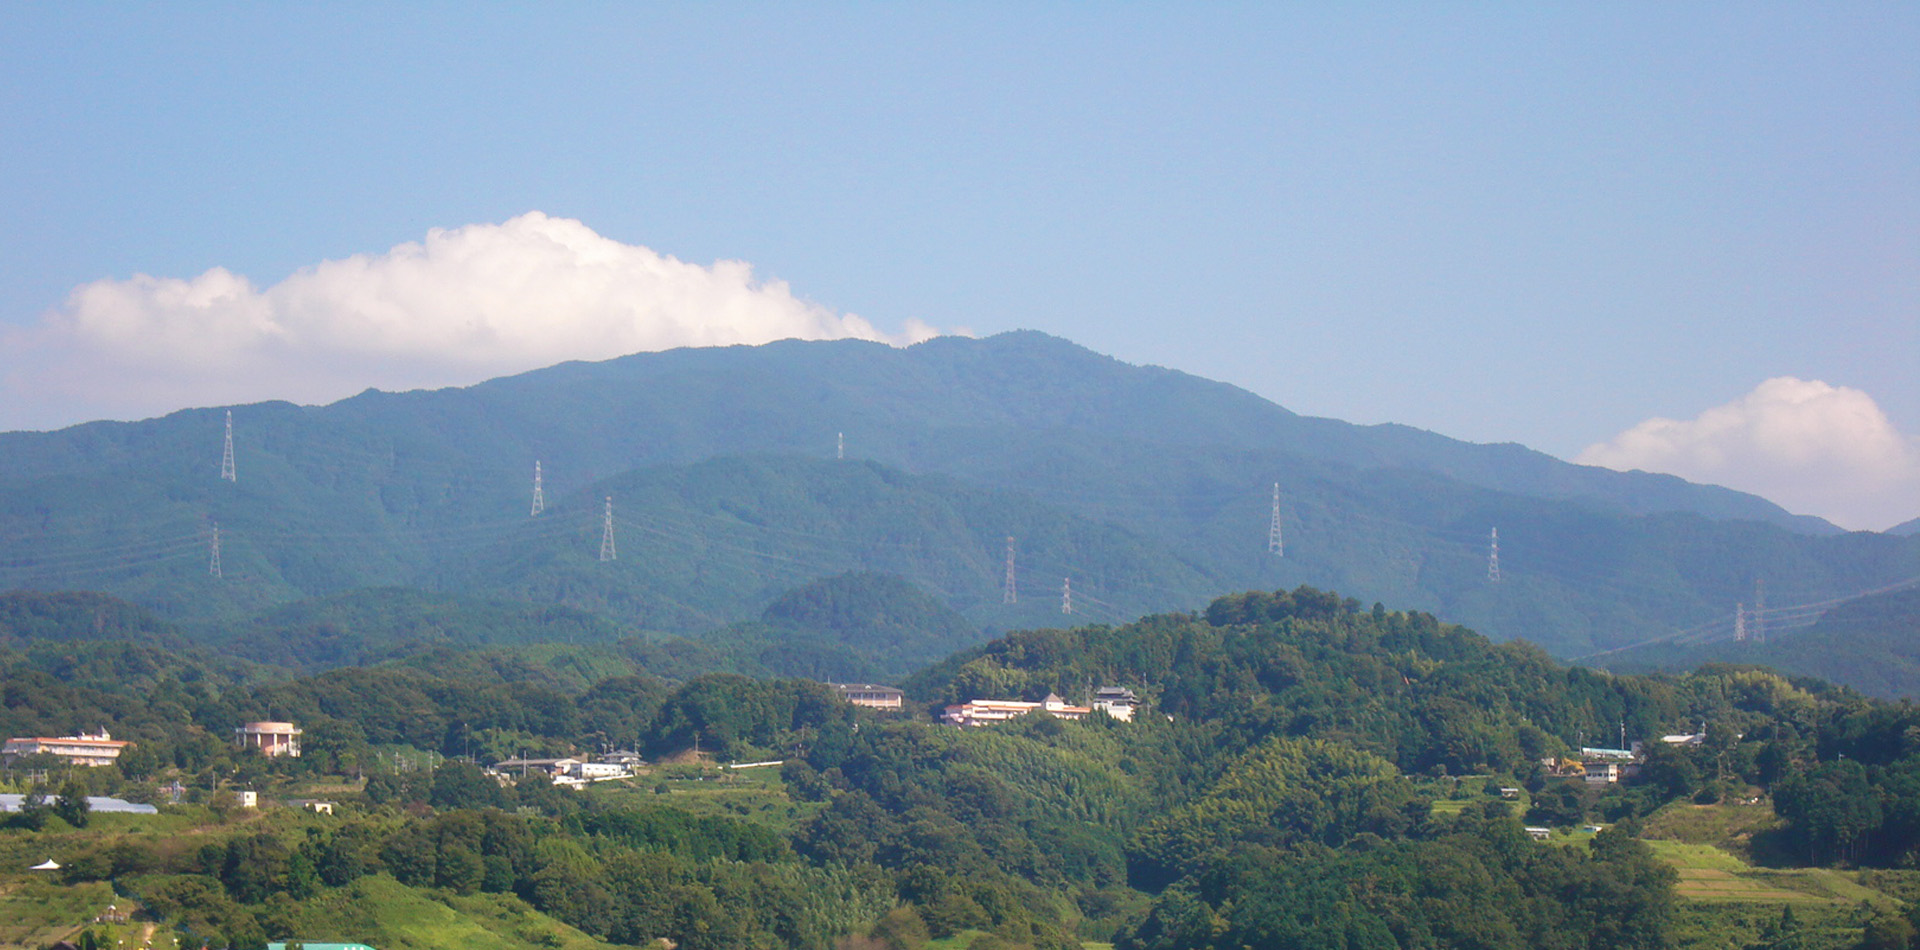 被指定为日本山岳遗产的名山金刚山